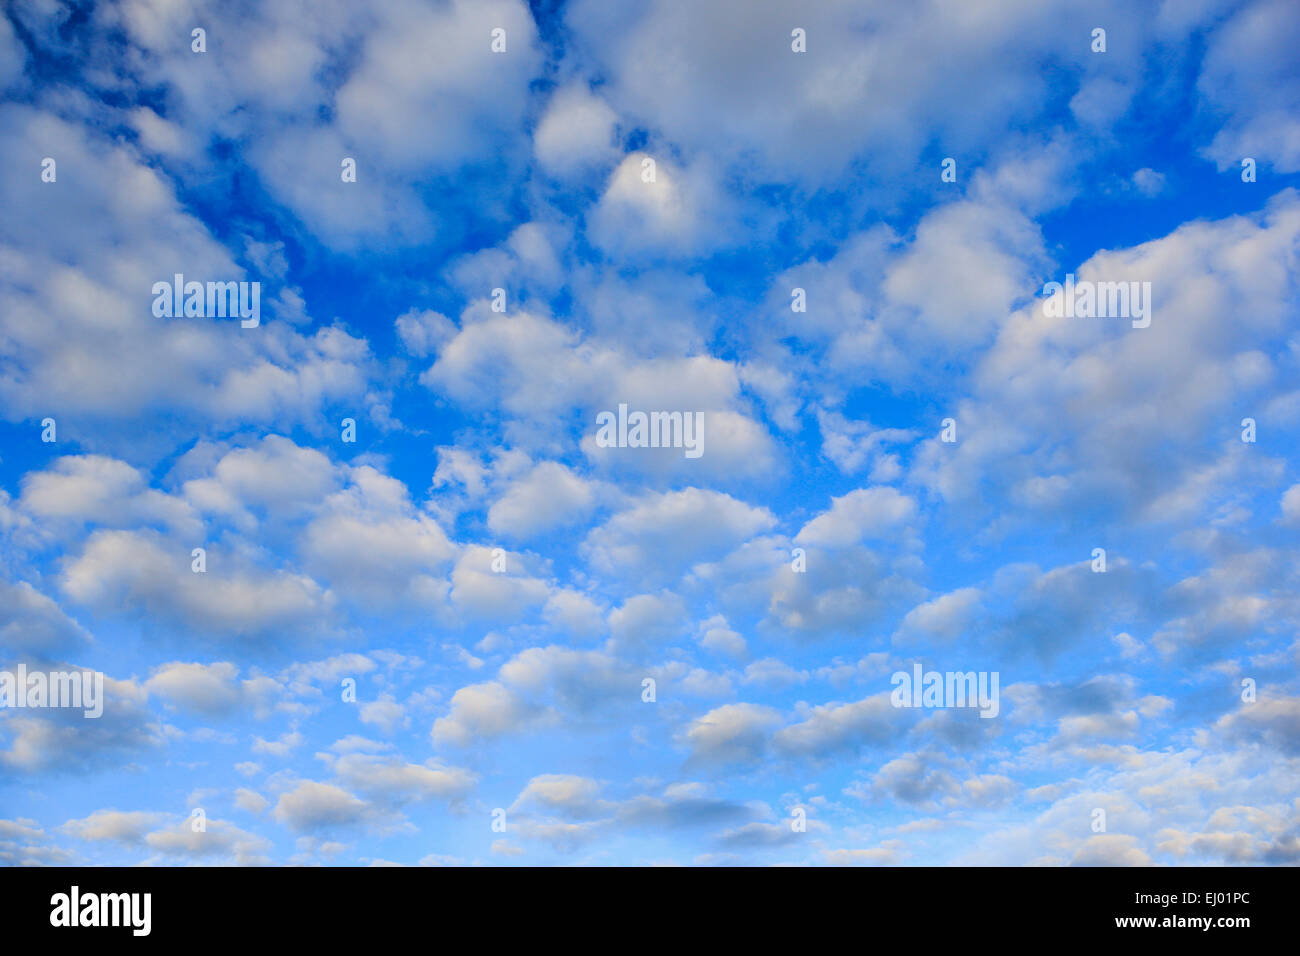 Mây, những đám mây trắng trong xanh được coi là biểu tượng của sự thanh bình. Hình ảnh của chúng đưa chúng ta đến thế giới giữa núi non và trời đất. Hãy mơ mộng cùng với những bông mây trắng lông vũ nhưng không kém phần bình yên.